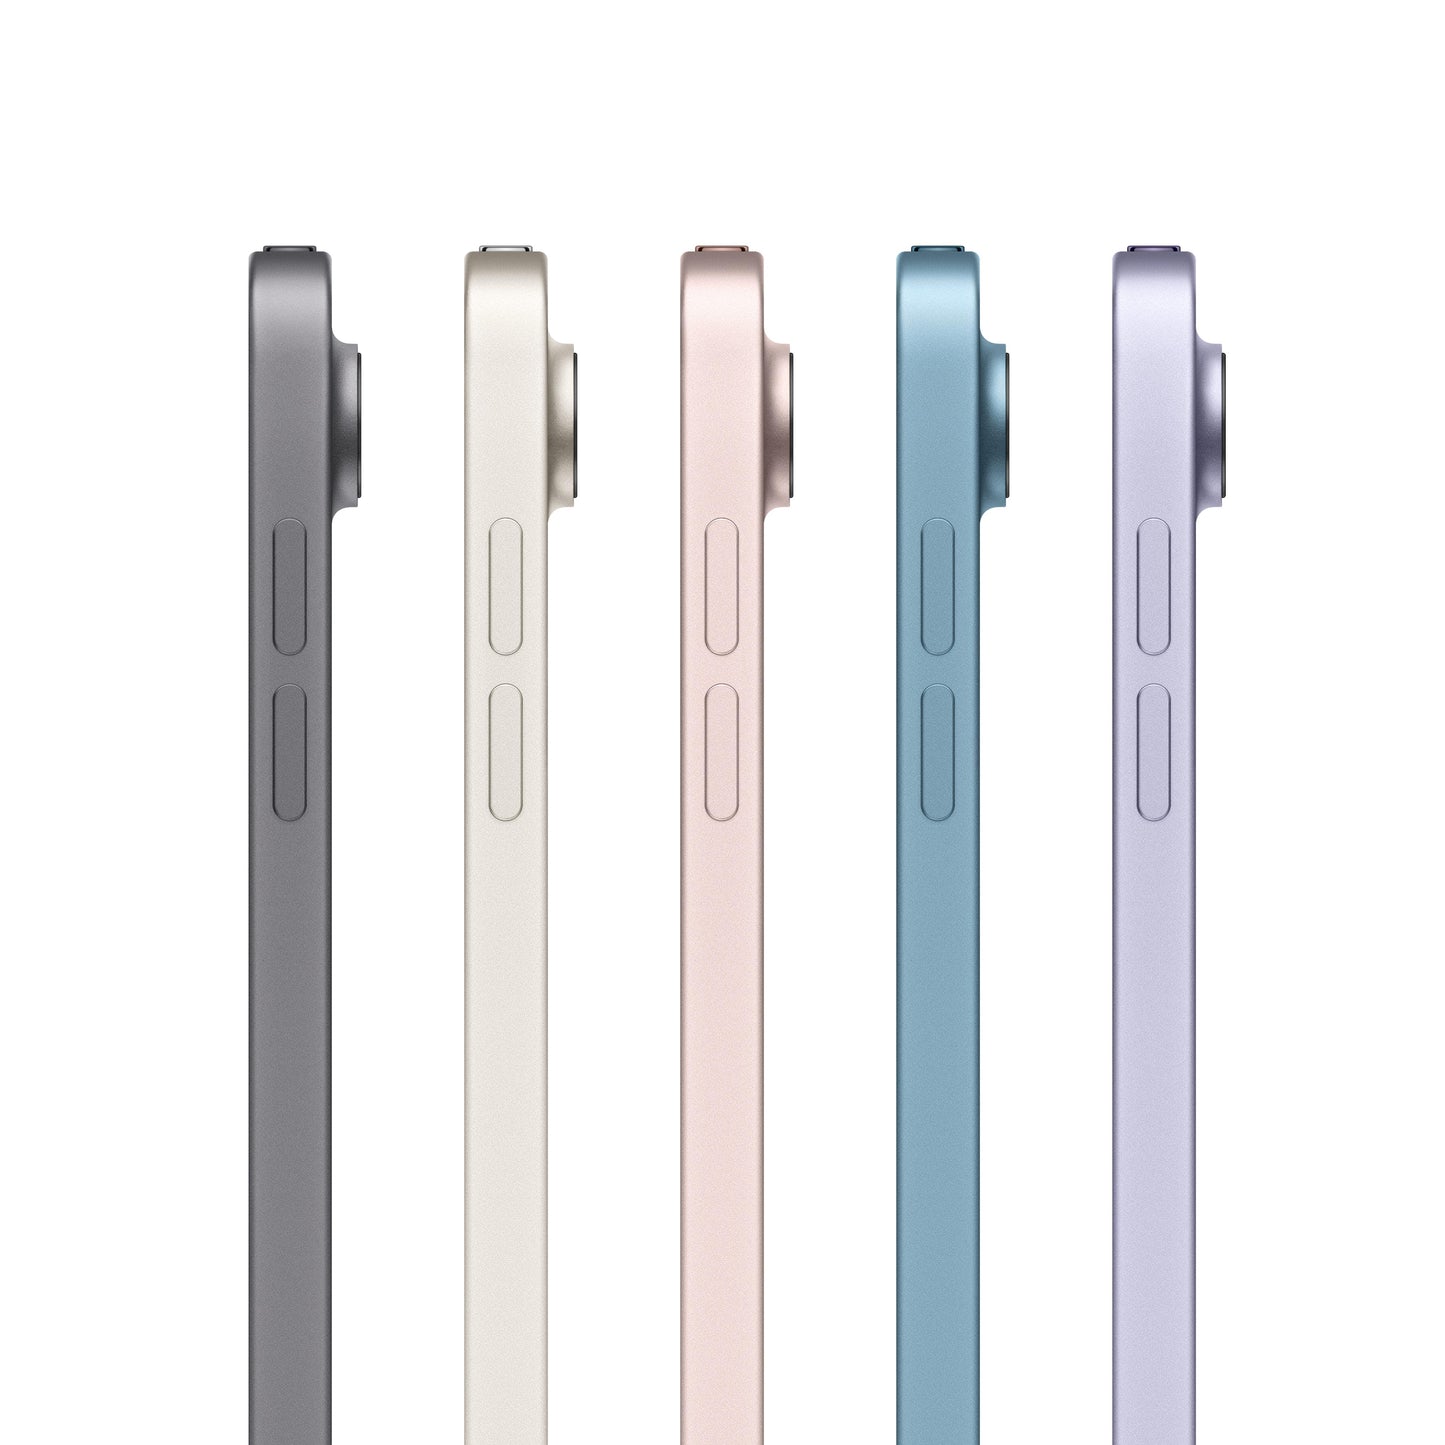 2022 iPad Air Wi-Fi 256GB - Pink (5th generation)